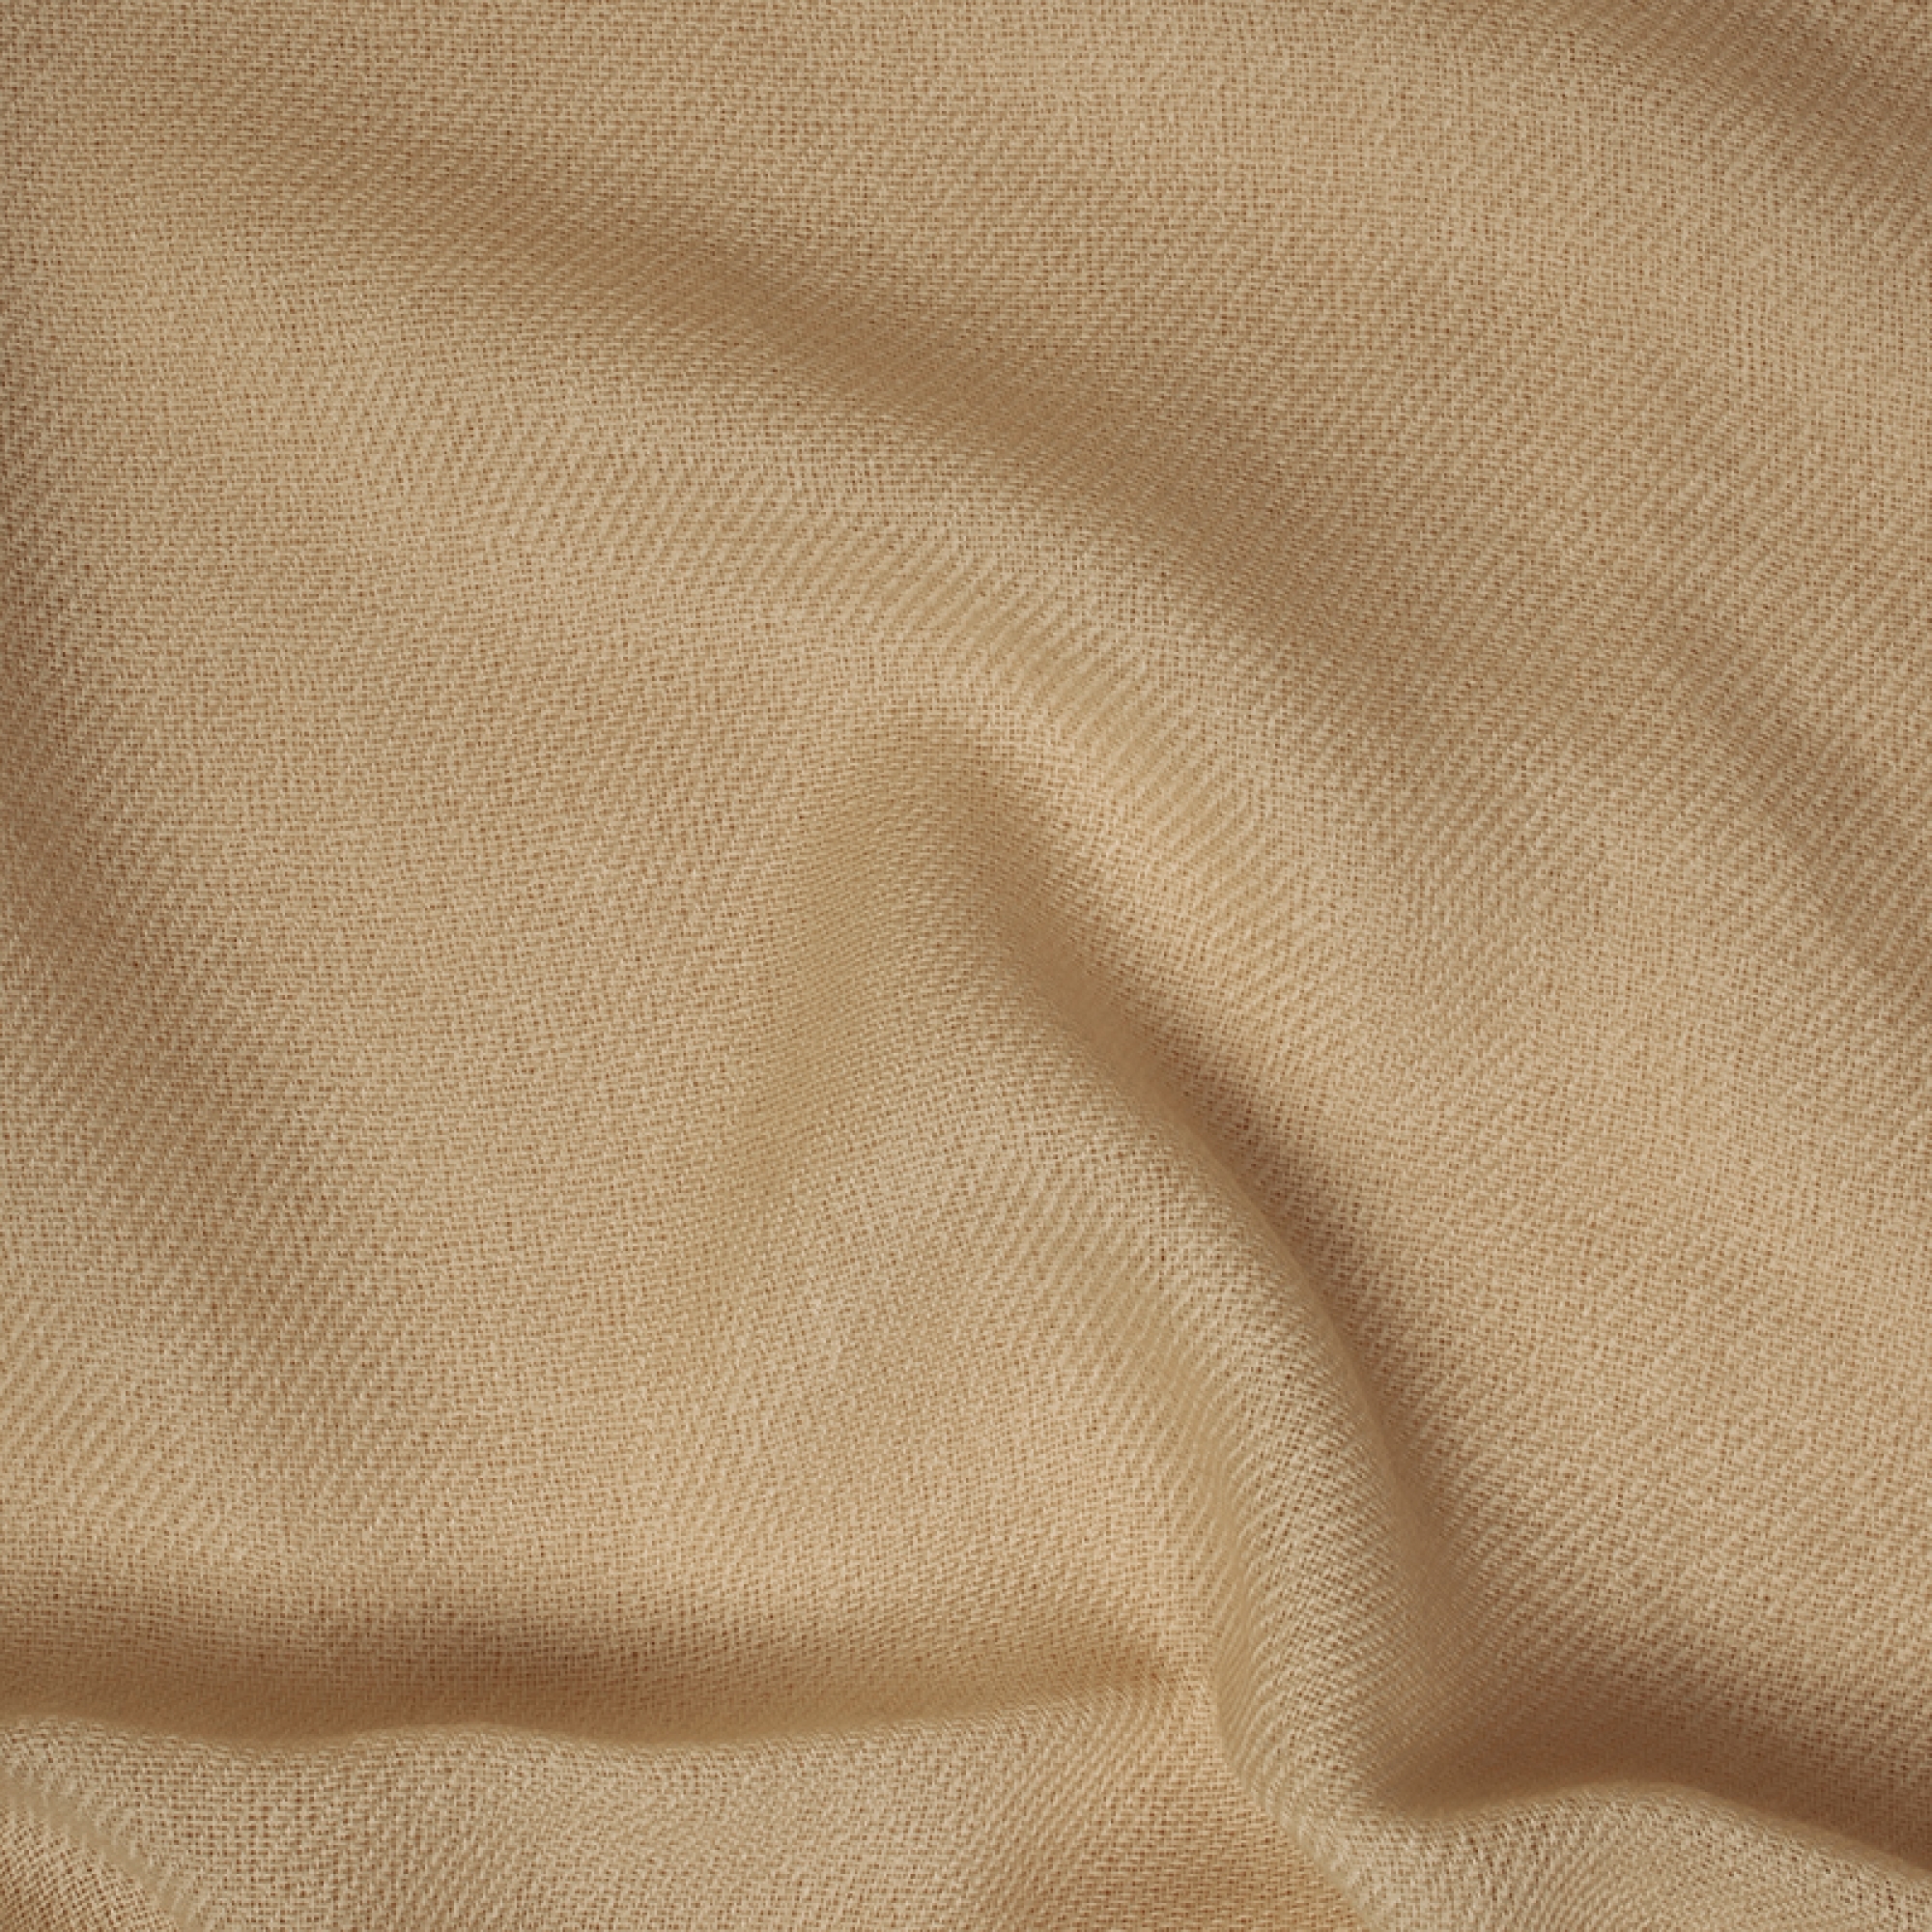 Cachemire accessoires couvertures plaids toodoo plain s 140 x 200 champagne dore 140 x 200 cm